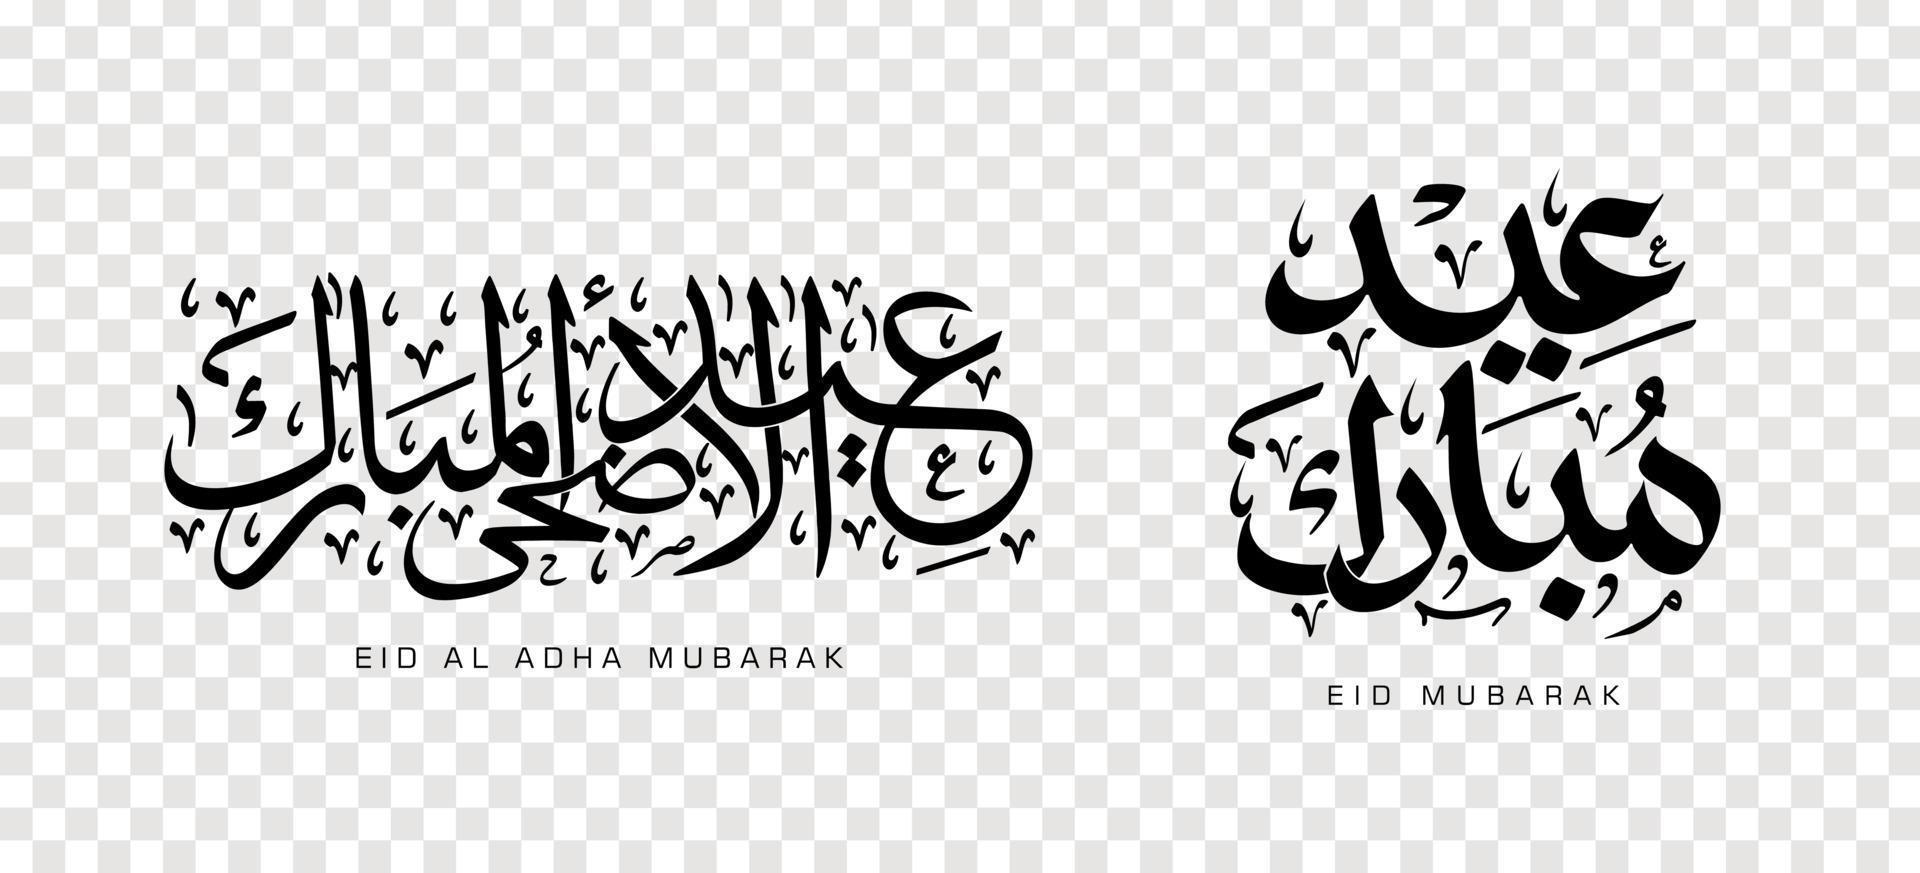 uppsättning av eid adha mubarak i arabisk kalligrafi, designelement. vektor illustration